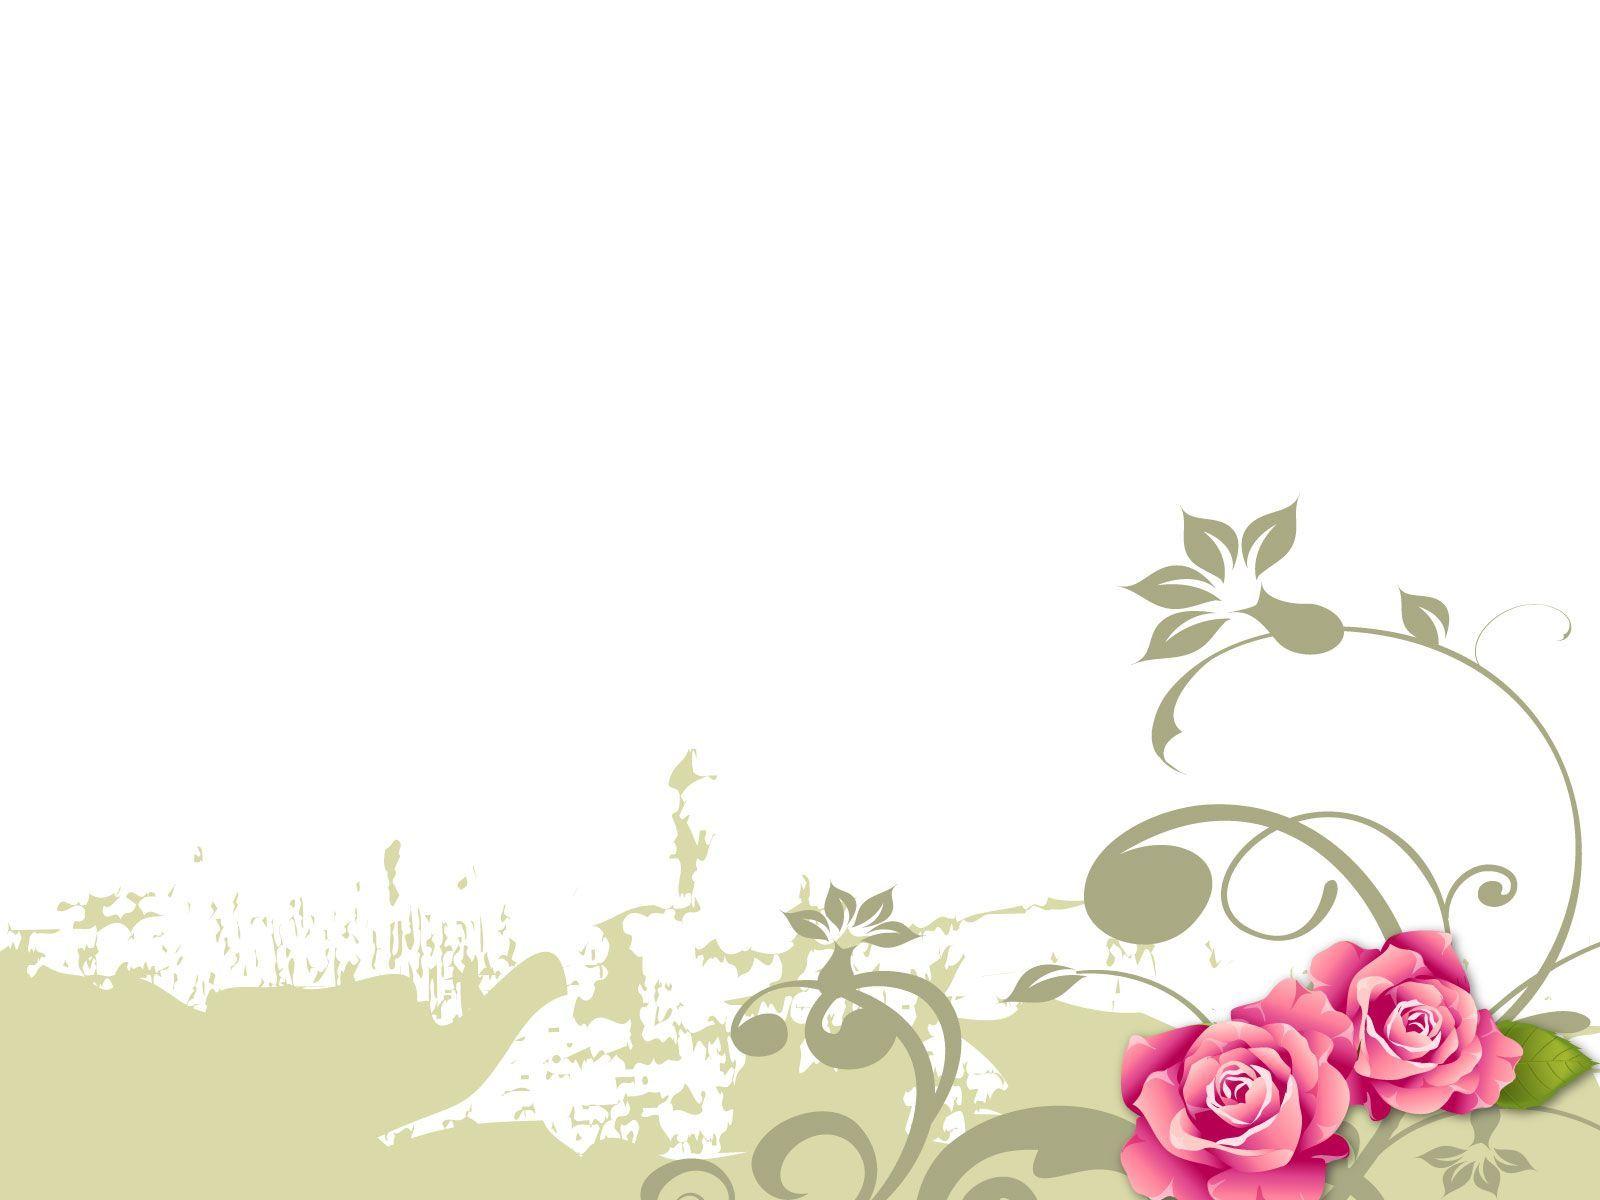 flower background designs free download